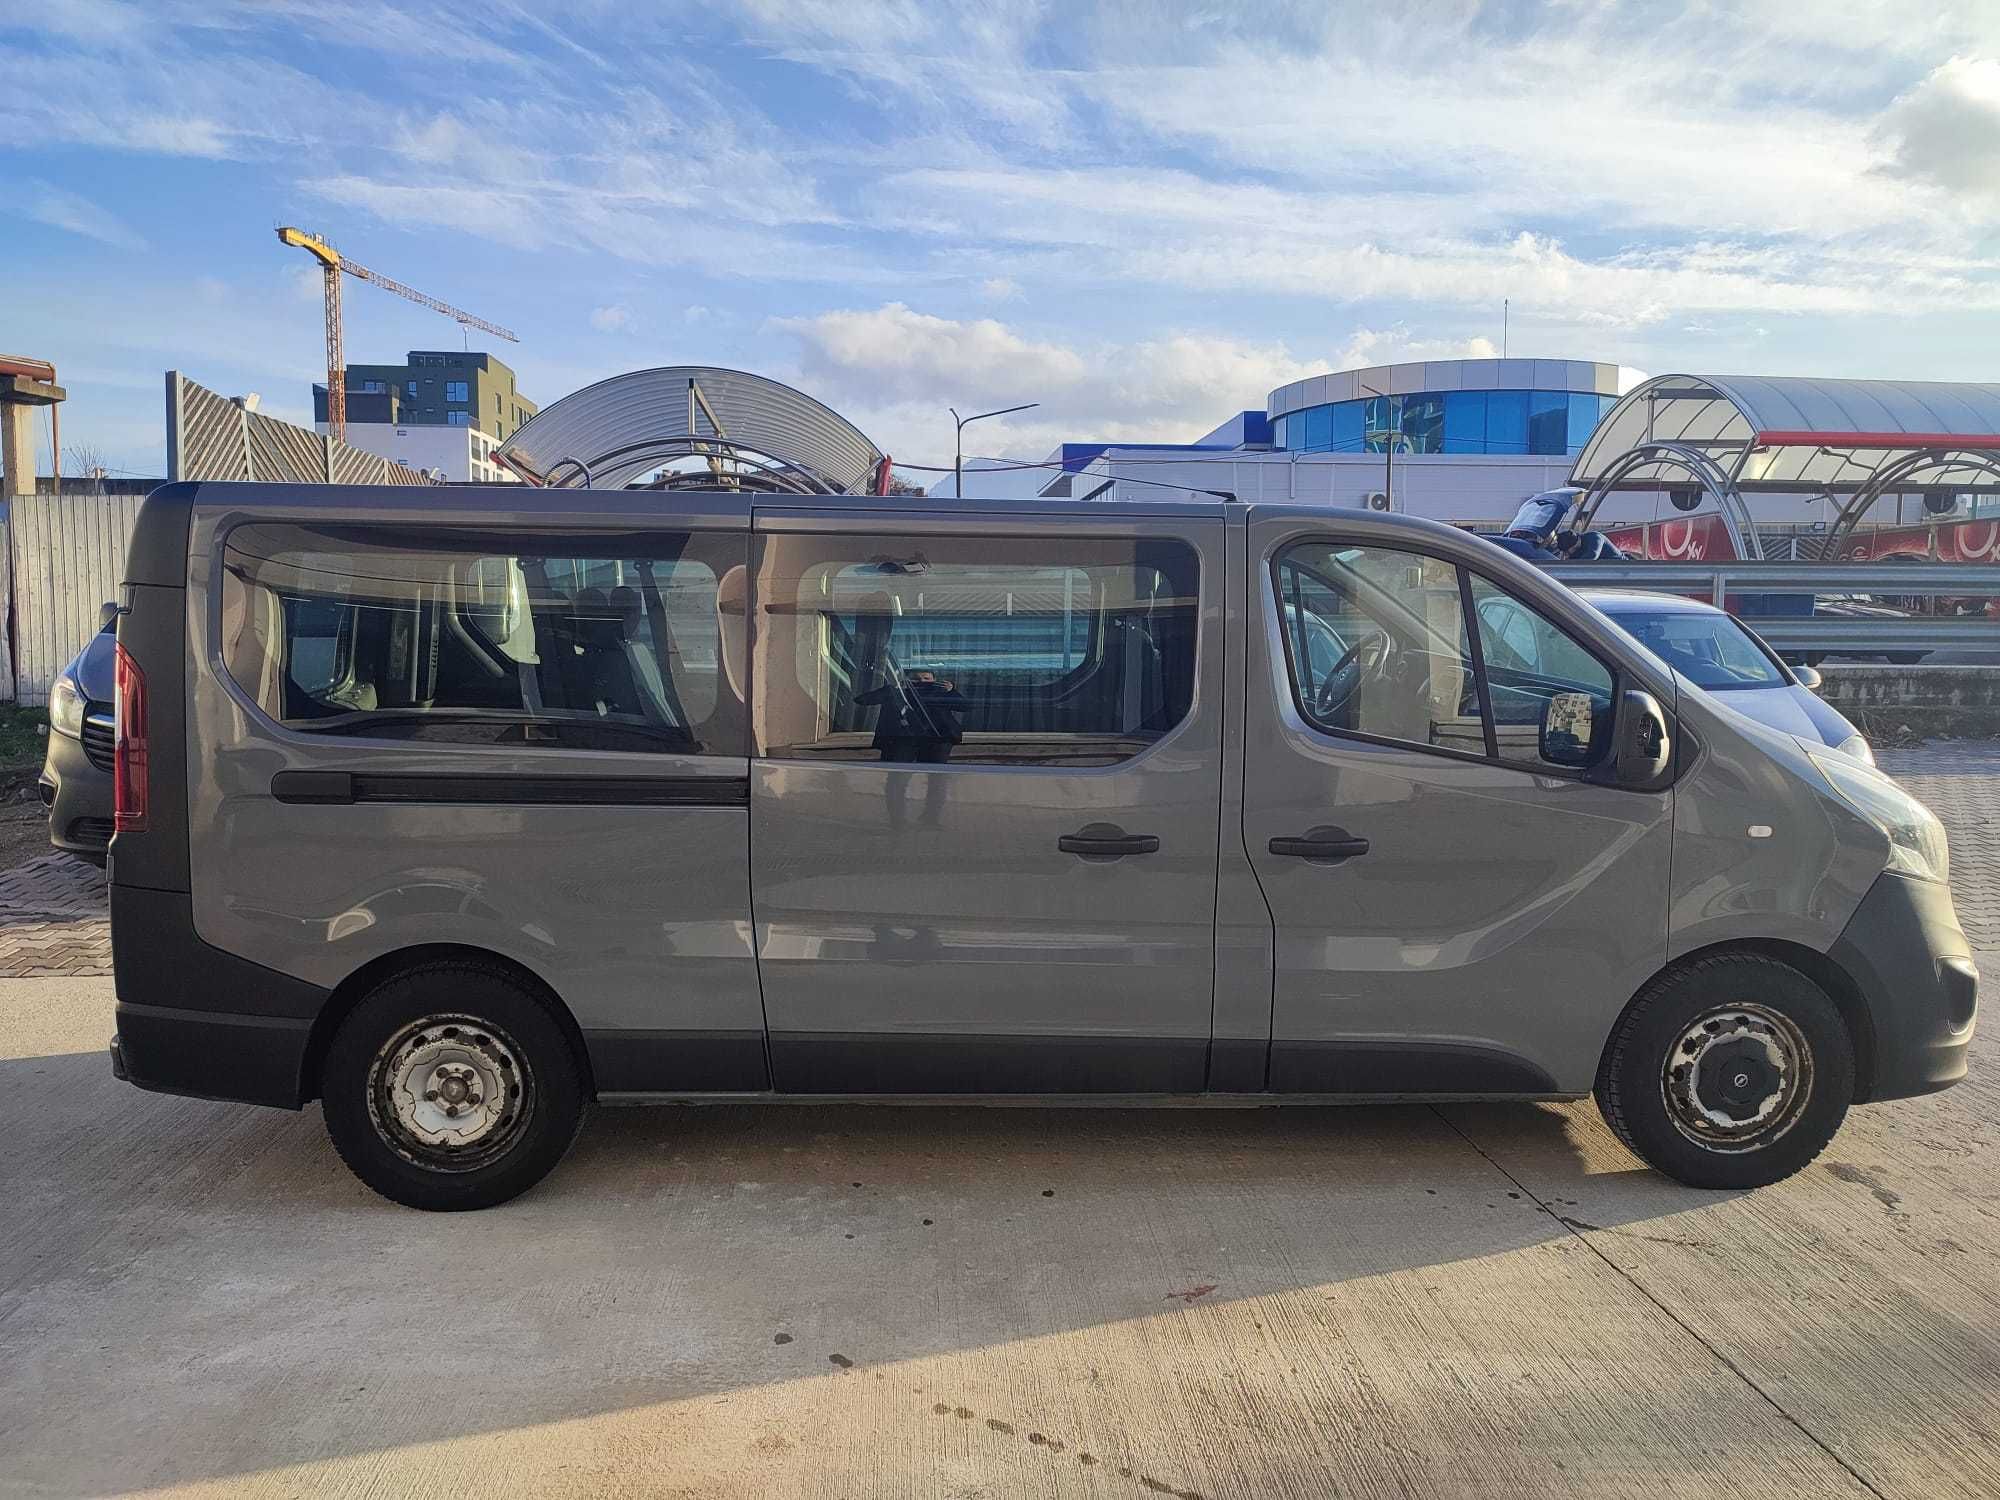 VAND Minibus 8+1 locuri - OPEL VIVARO 1,6 cc - fabricatie 2016